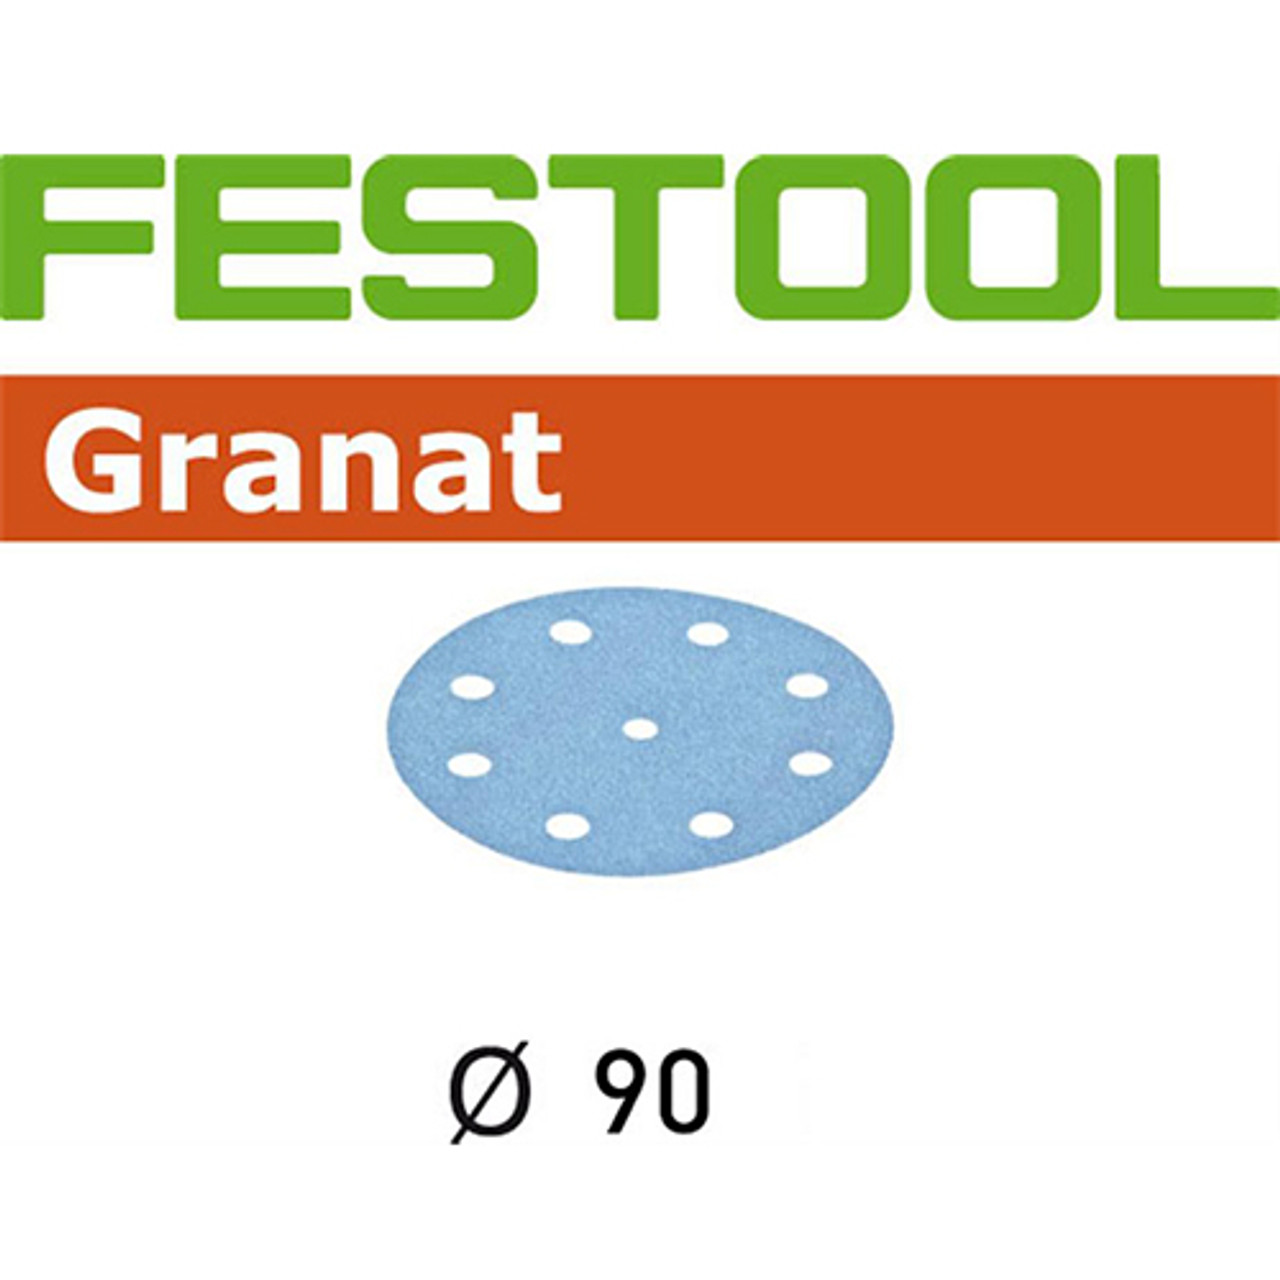 Festool RO90, 120 Grit, Granat Sanding Discs, 100PK